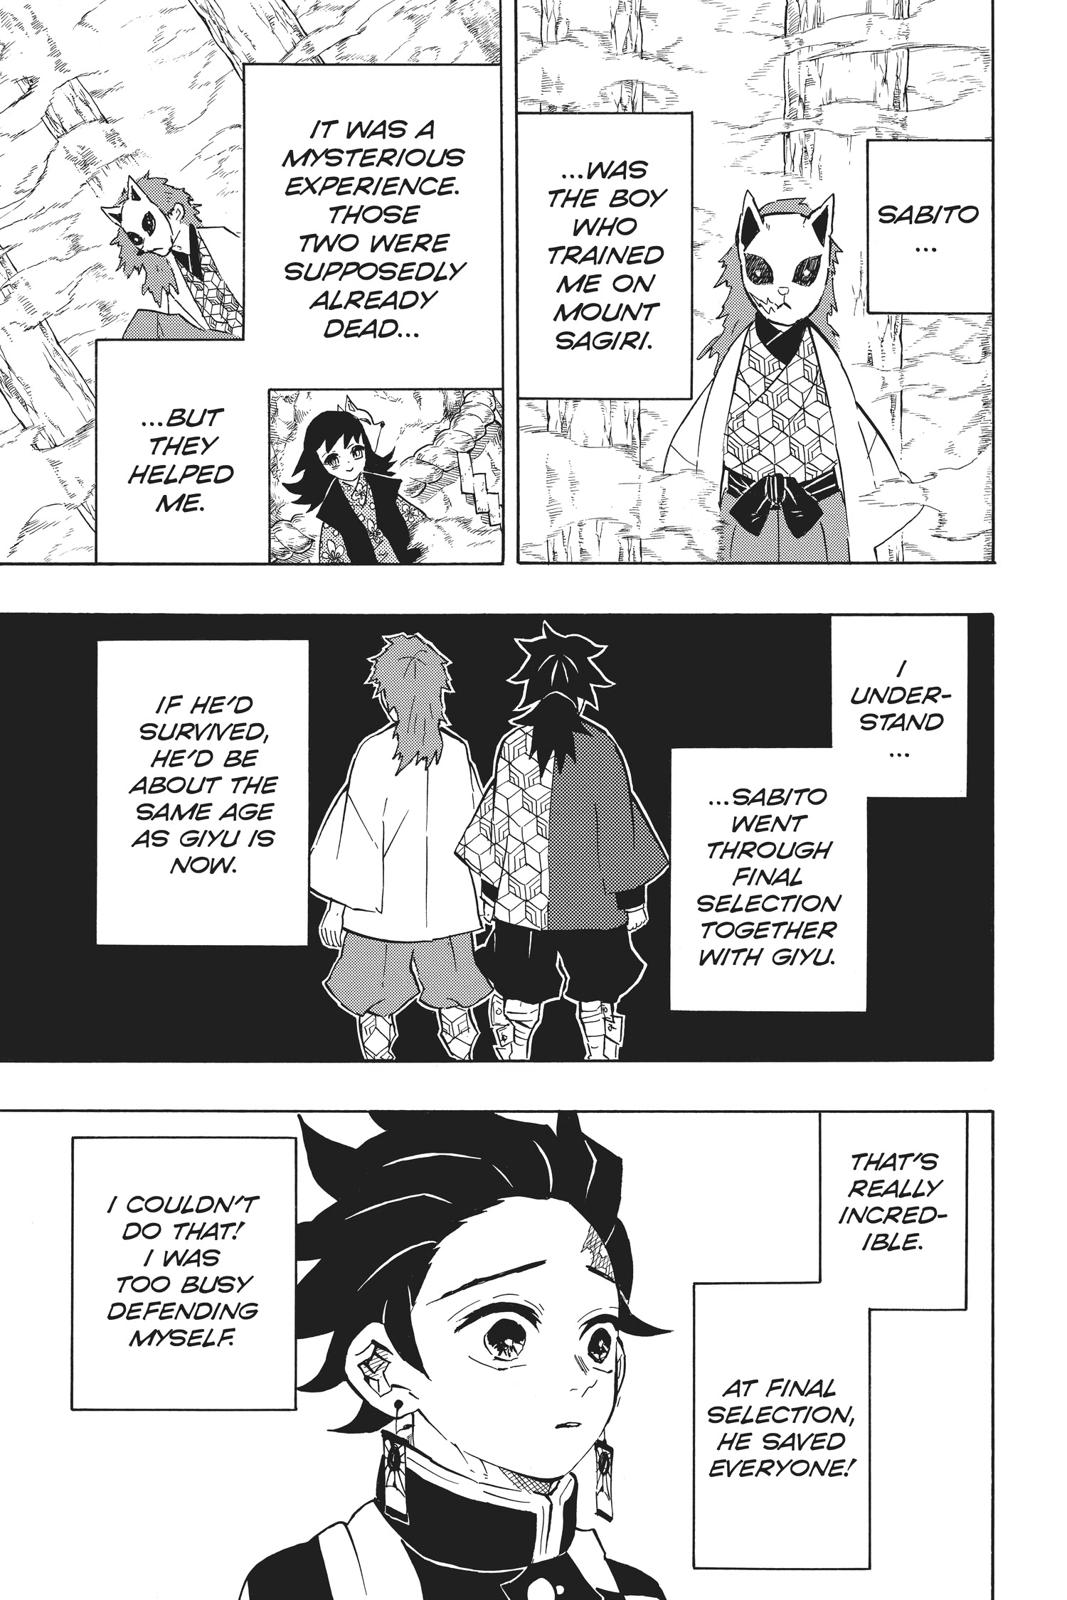 Demon Slayer Manga Manga Chapter - 131 - image 3